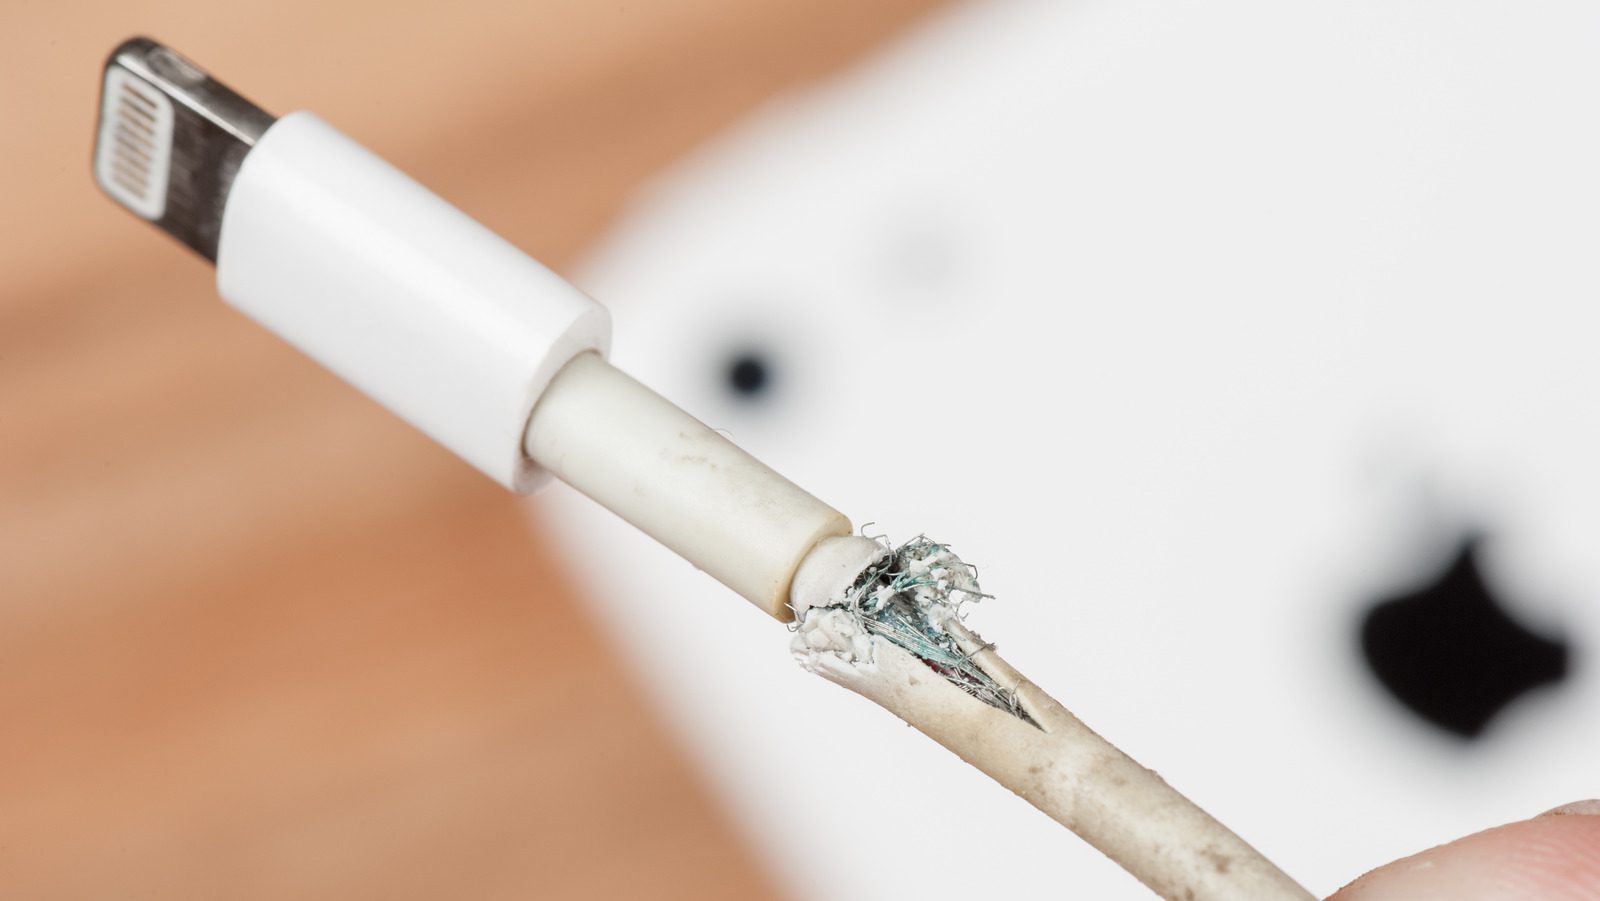 Apple Şarj Kablolarının Bu Kadar Sık Kırılmasının Nedeni